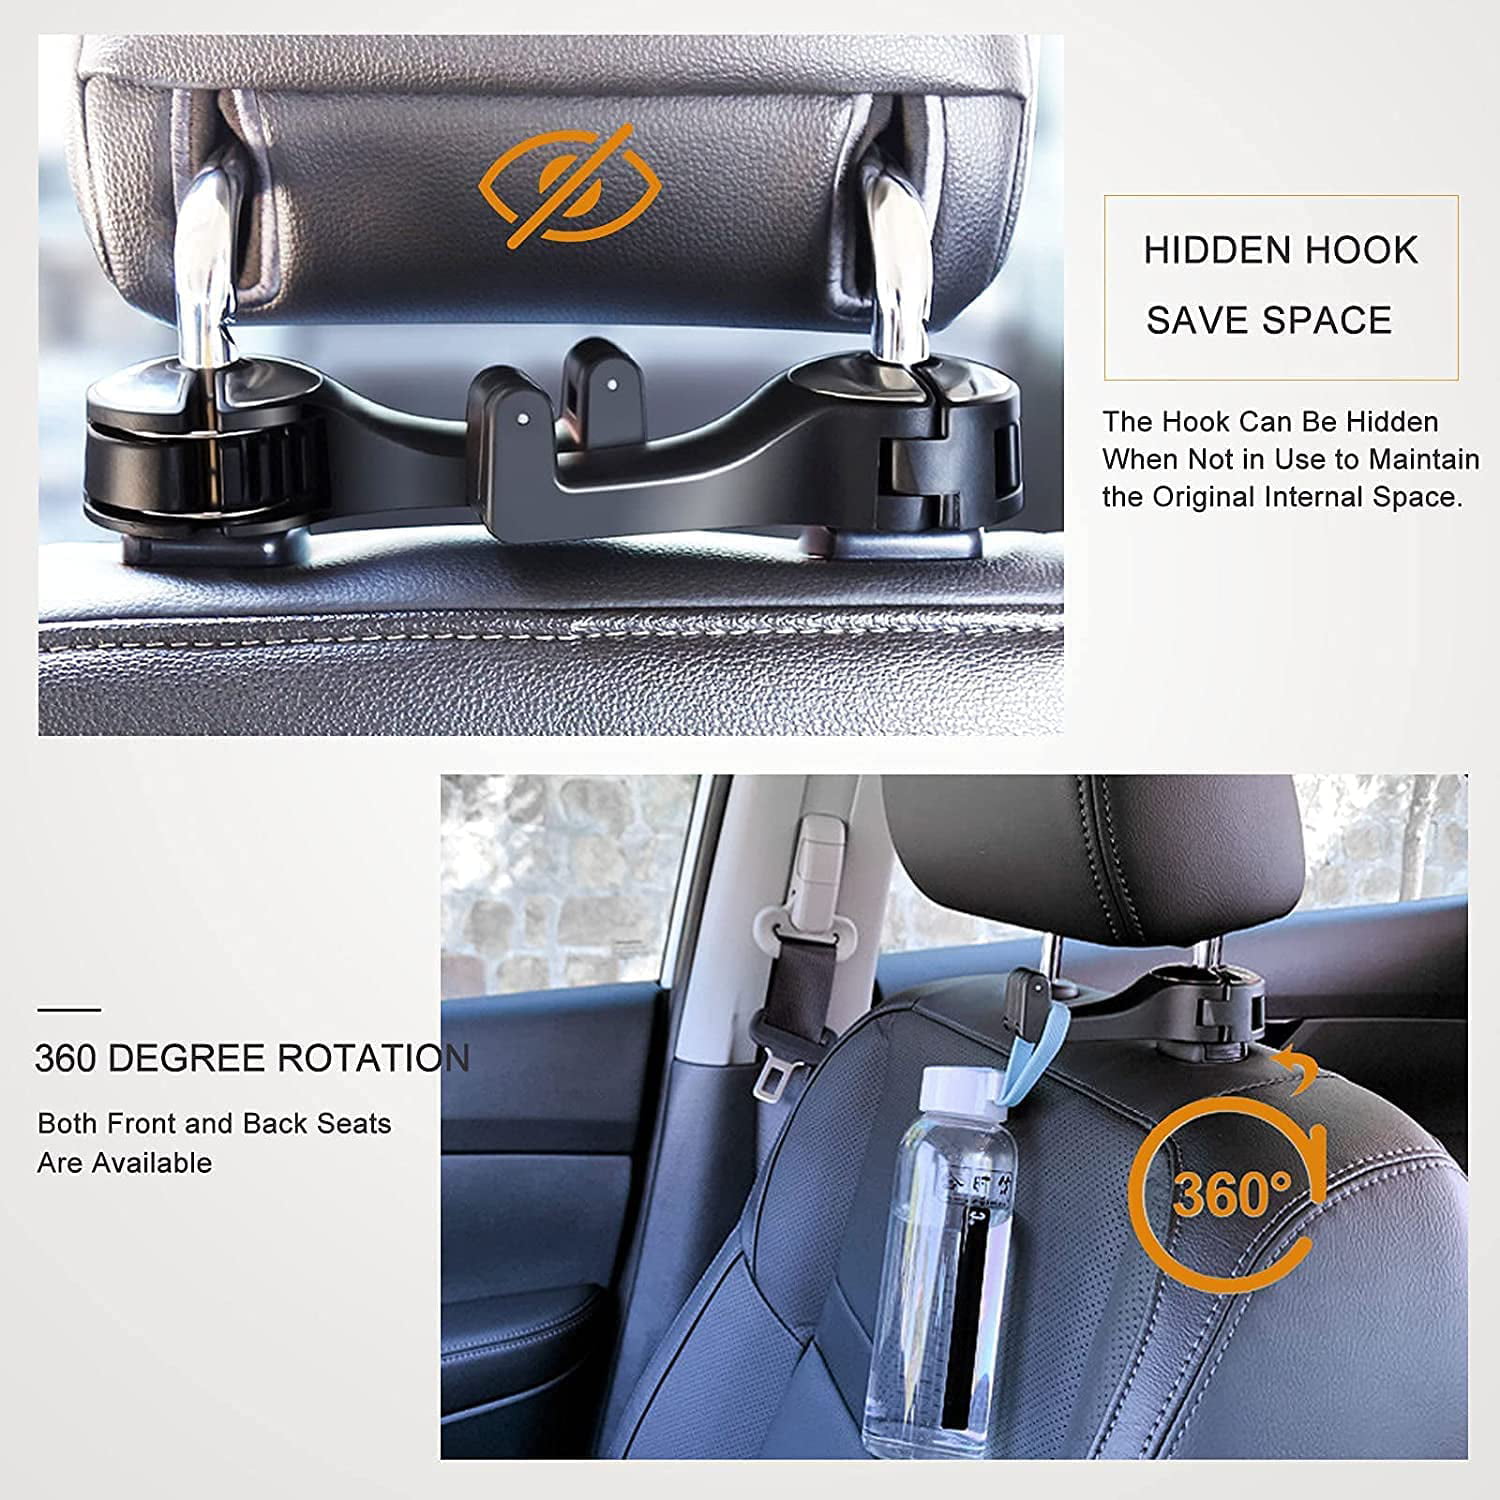 2 In 1 Car Headrest Hidden Hook 2 Pack Car Seat Hidden Hook with